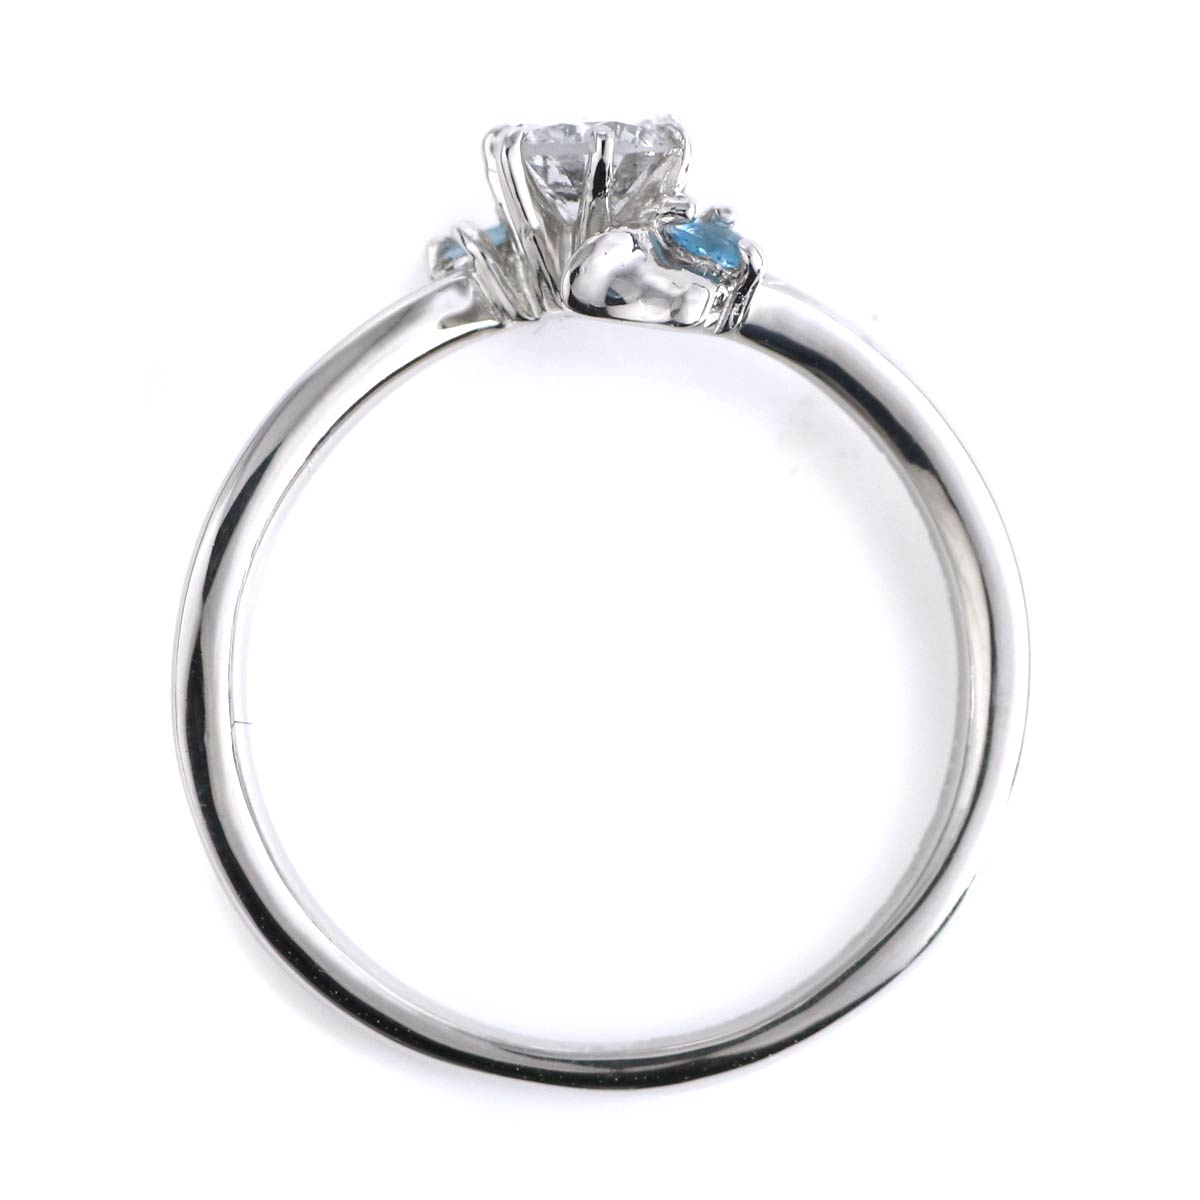 婚約指輪 ダイヤモンド プラチナリング 一粒 大粒 指輪 エンゲージリング 0.4ct プロポーズ用 レディース 人気 ダイヤ 刻印無料 3月